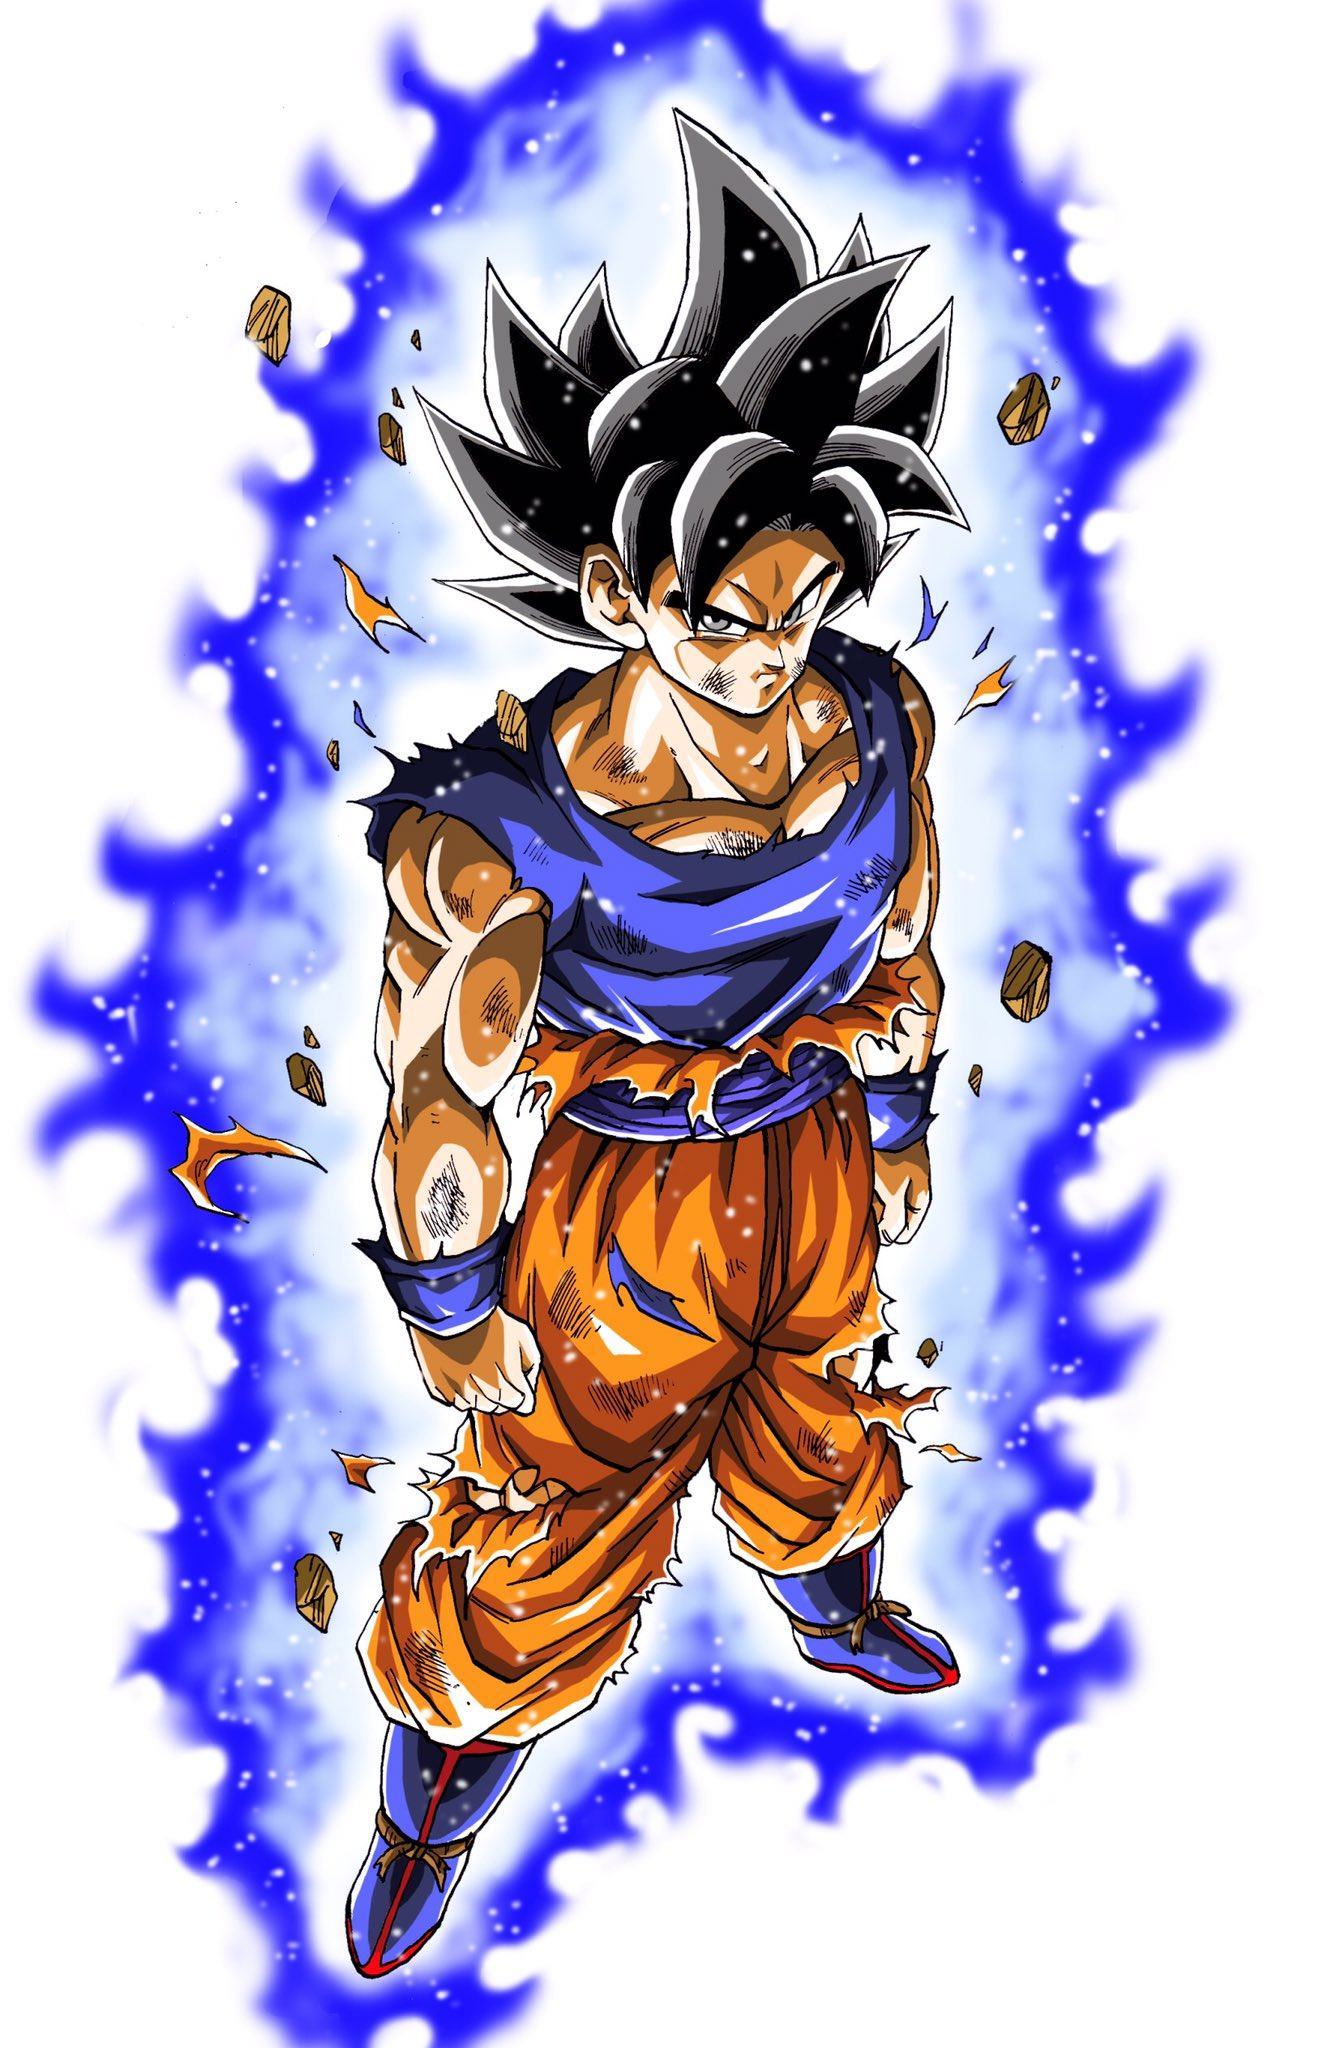 Hình ảnh Goku bản năng tuyệt vời